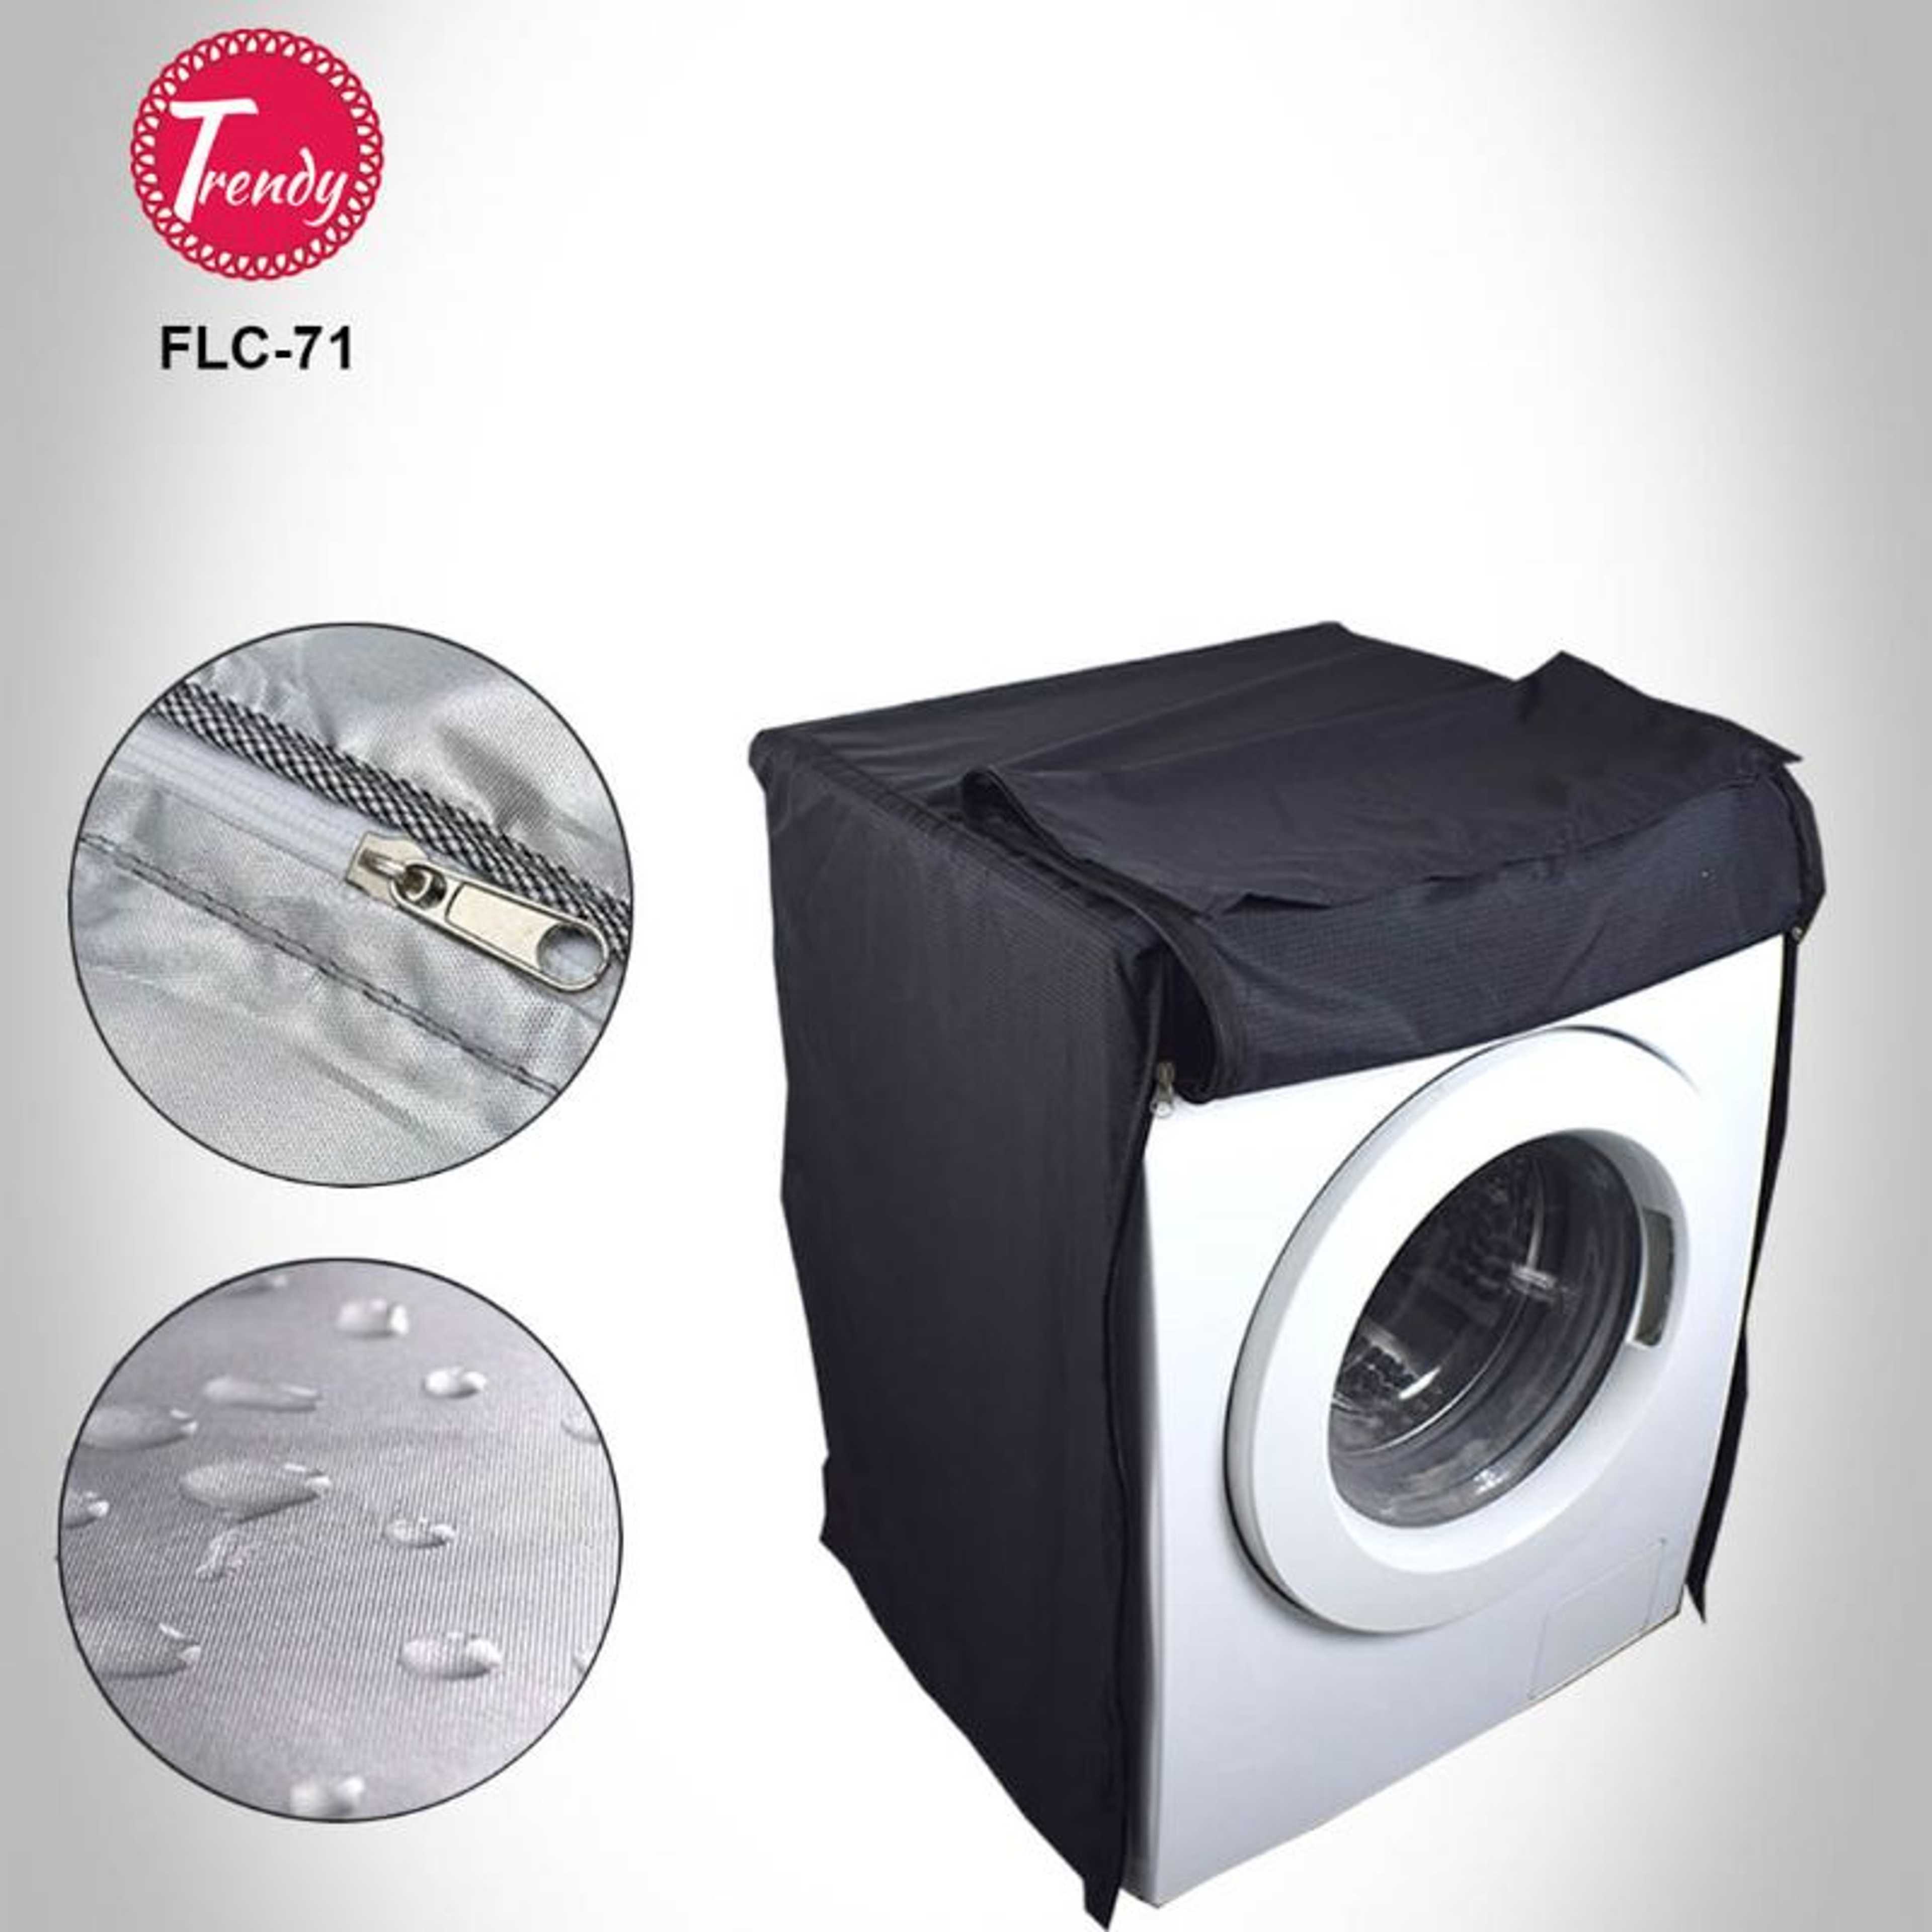 FLC-71 Front Loader Washing Machine Cover black color